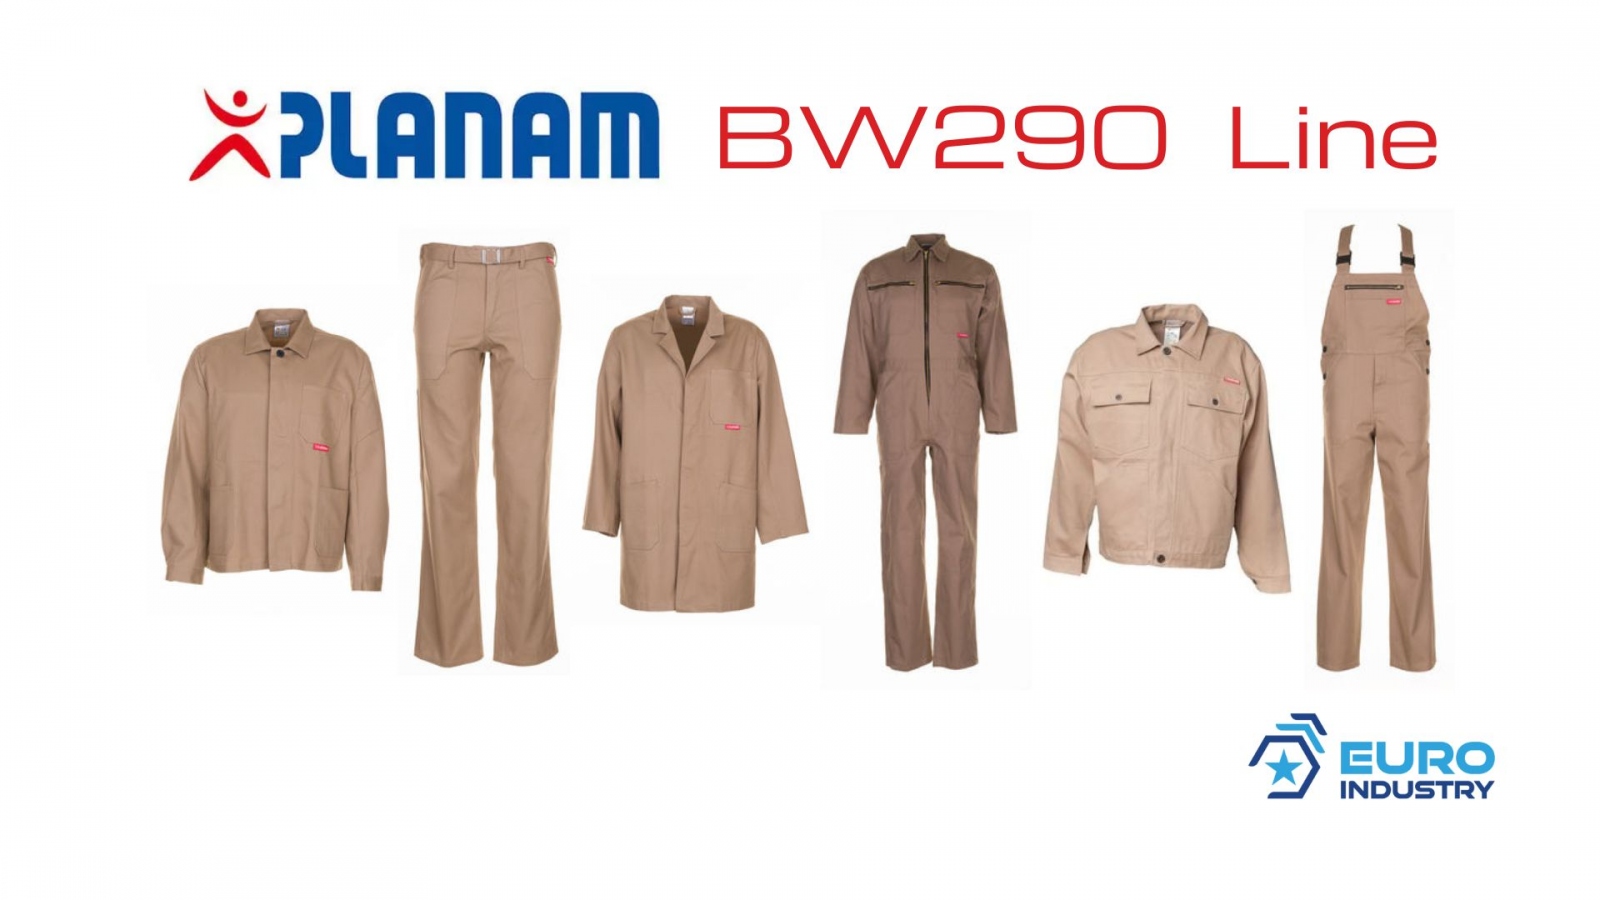 pics/Planam/planam-bw-290-linie-beige-khaki-baumwolle-details.jpg